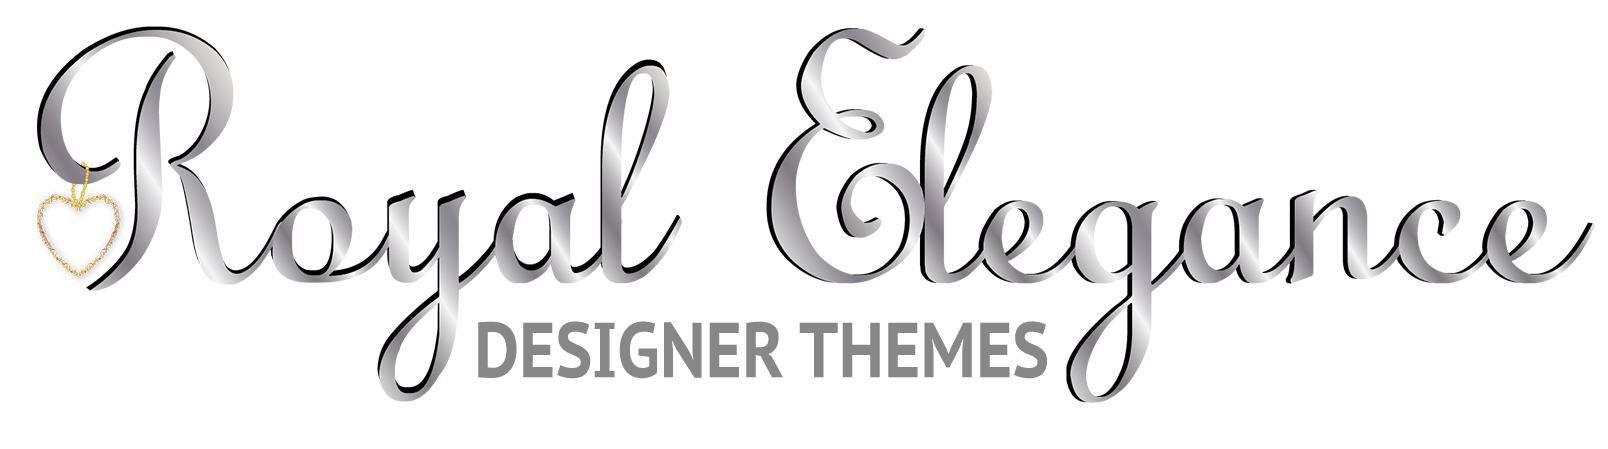 Royal Elegance Designer Themes